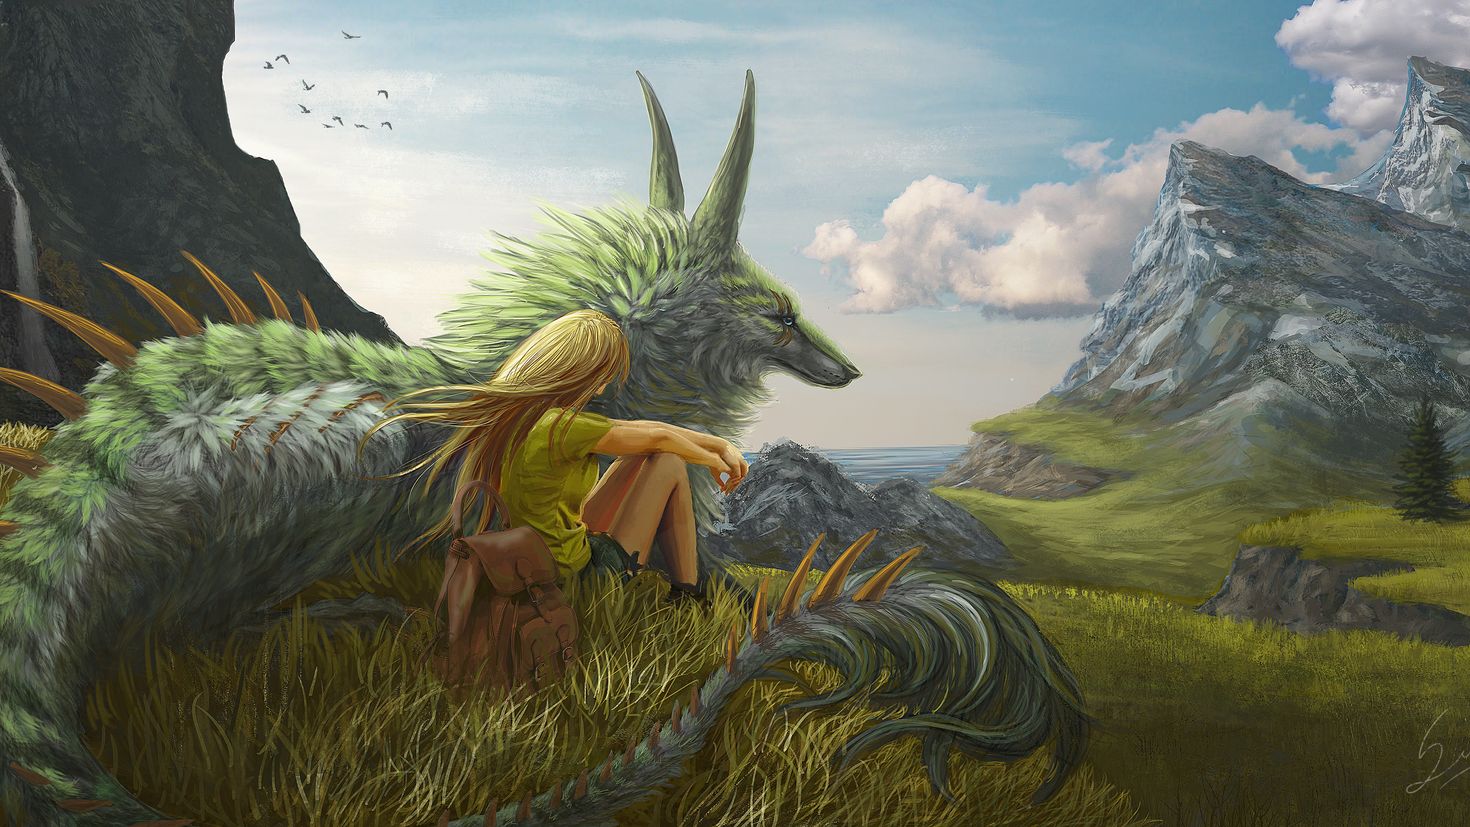 Dragon adventures fantasy pets. Пейзаж с драконом. Фантастические существа. Сказочный дракон. Фэнтези пейзажи с драконами.